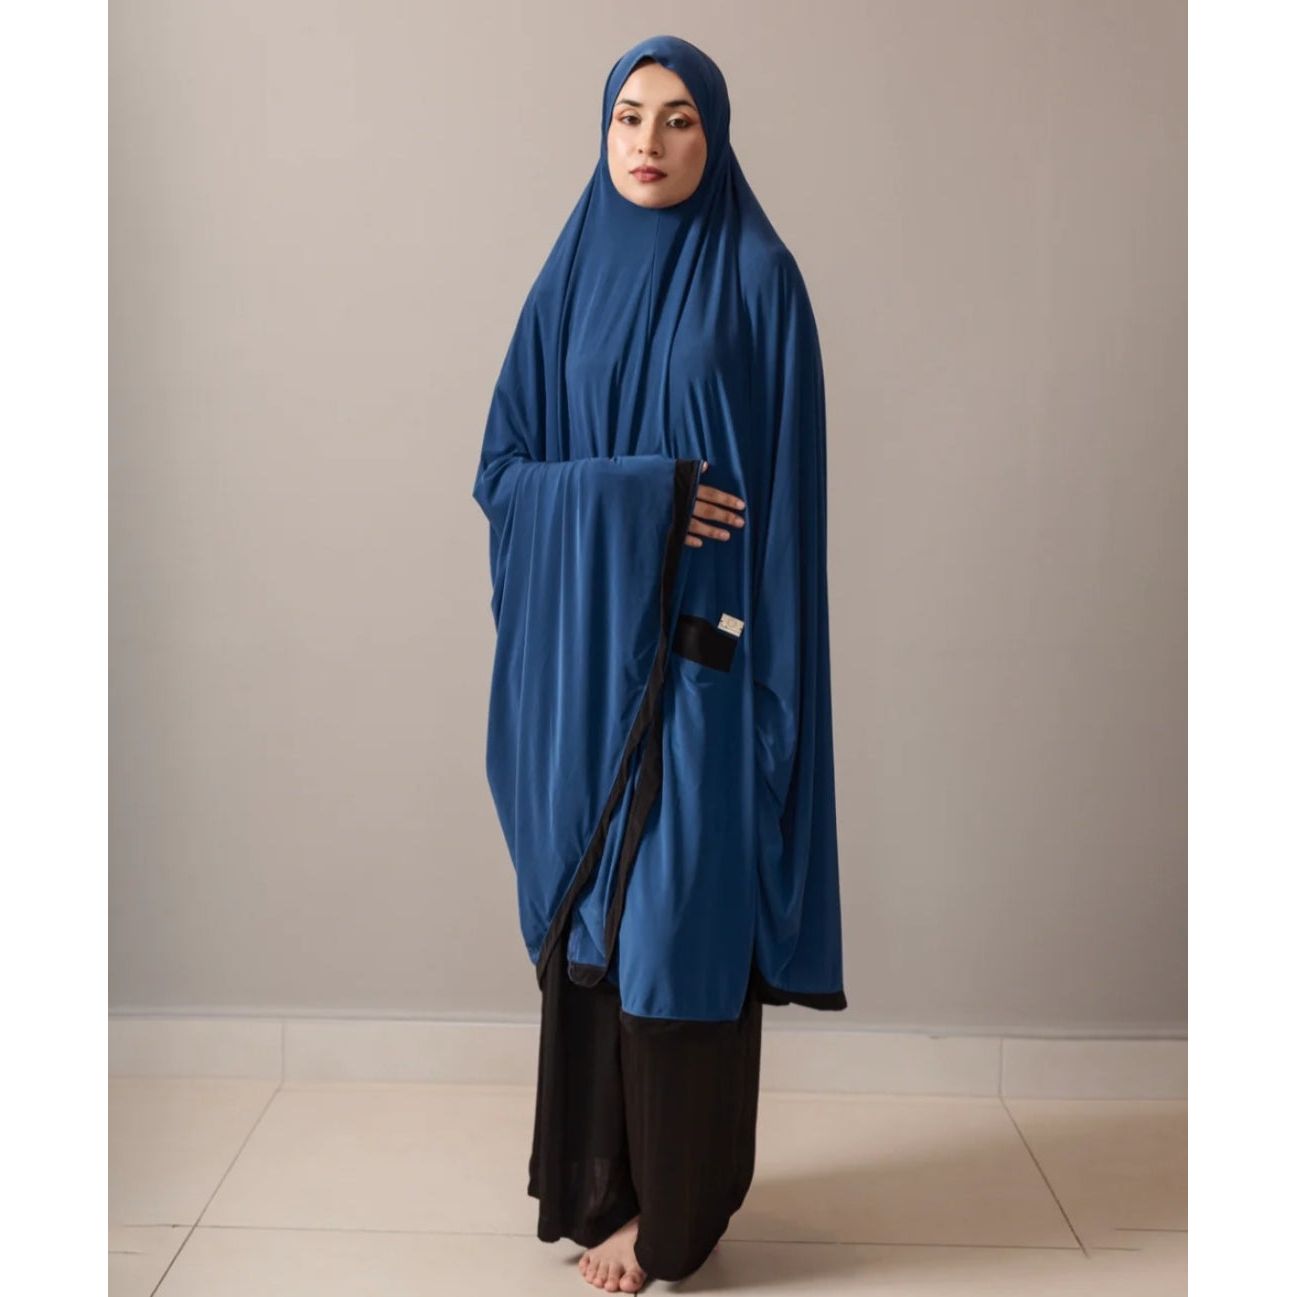 Pocket Burqa - Knee Length - Full Blue With Black Pocket